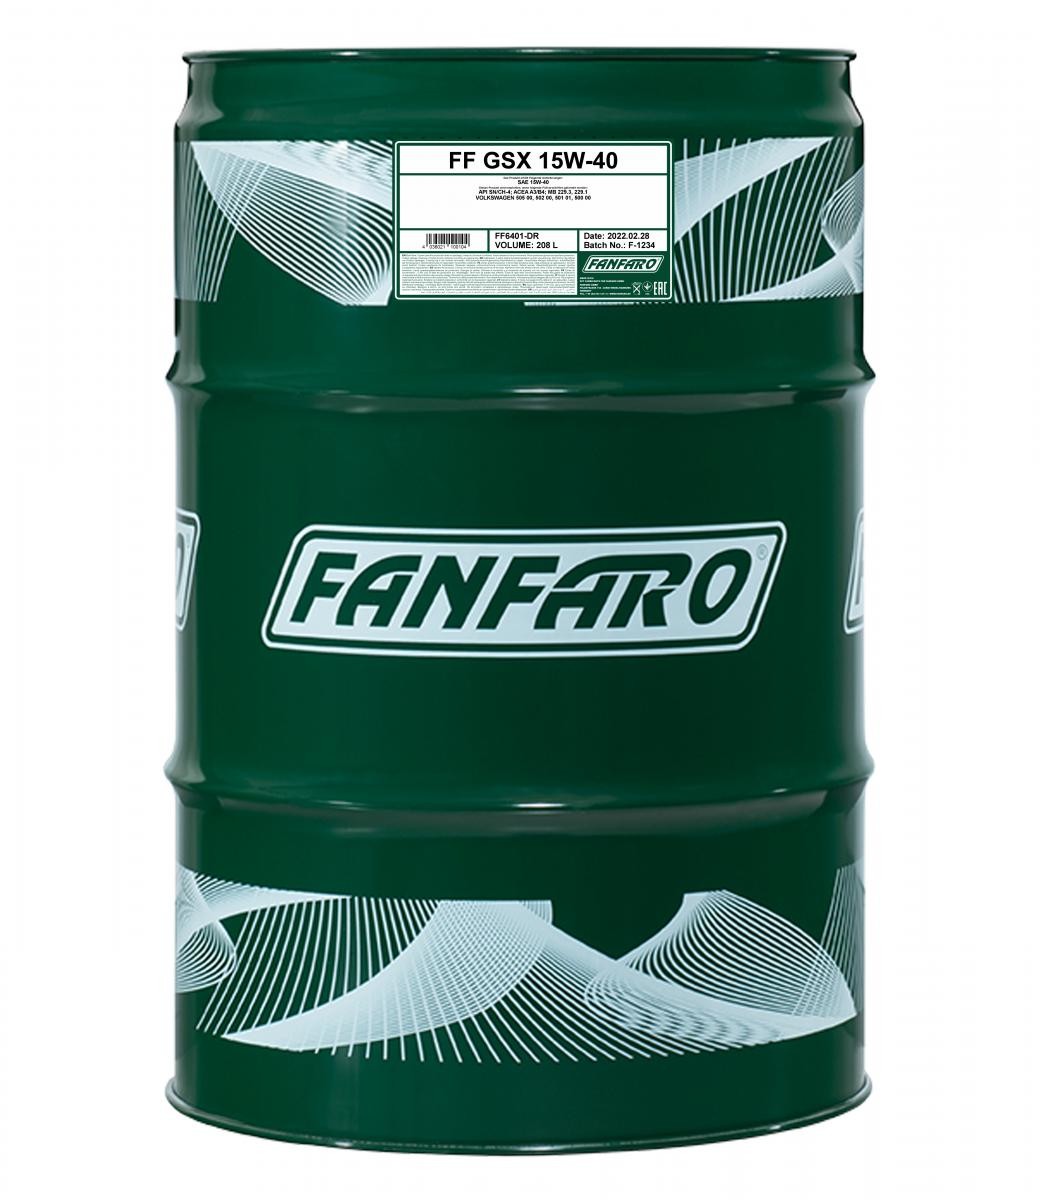 Original FF6401-DR FANFARO Car engine oil IVECO